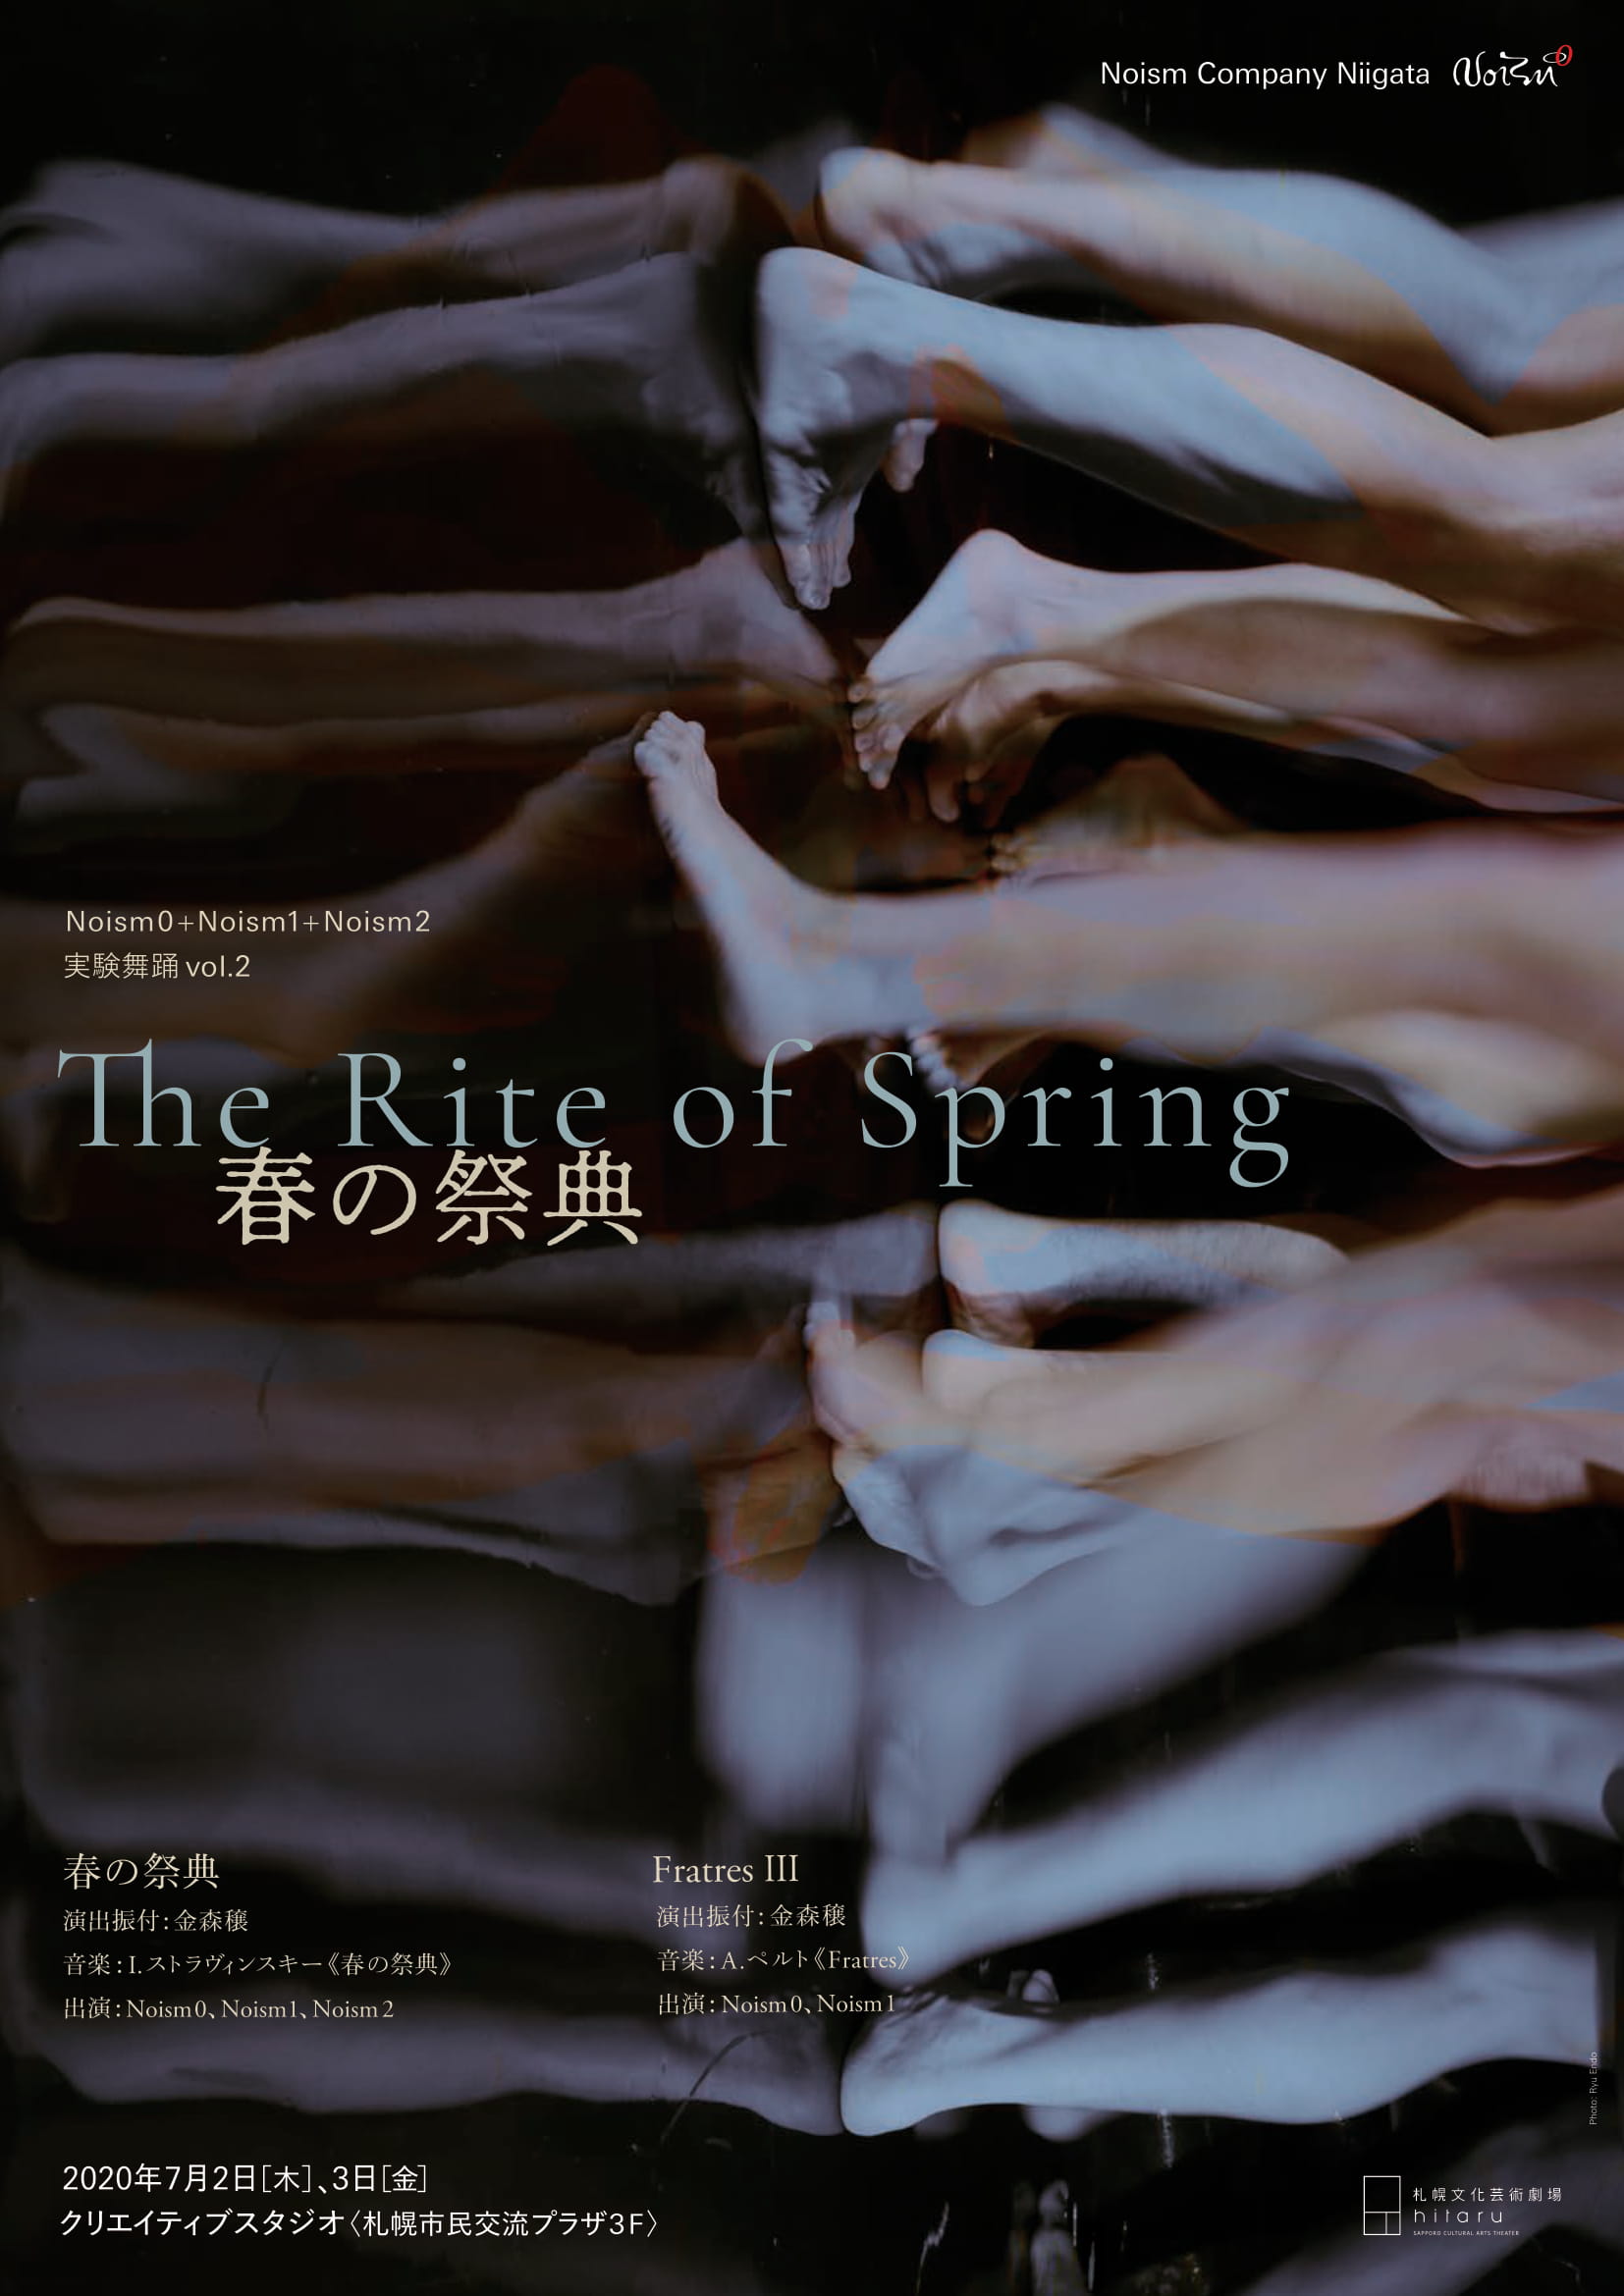 【公演中止】 クリエイティブスタジオ Noism Company Niigata 実験舞踊vol.2「春の祭典」/「FratresⅢ」のイメージ